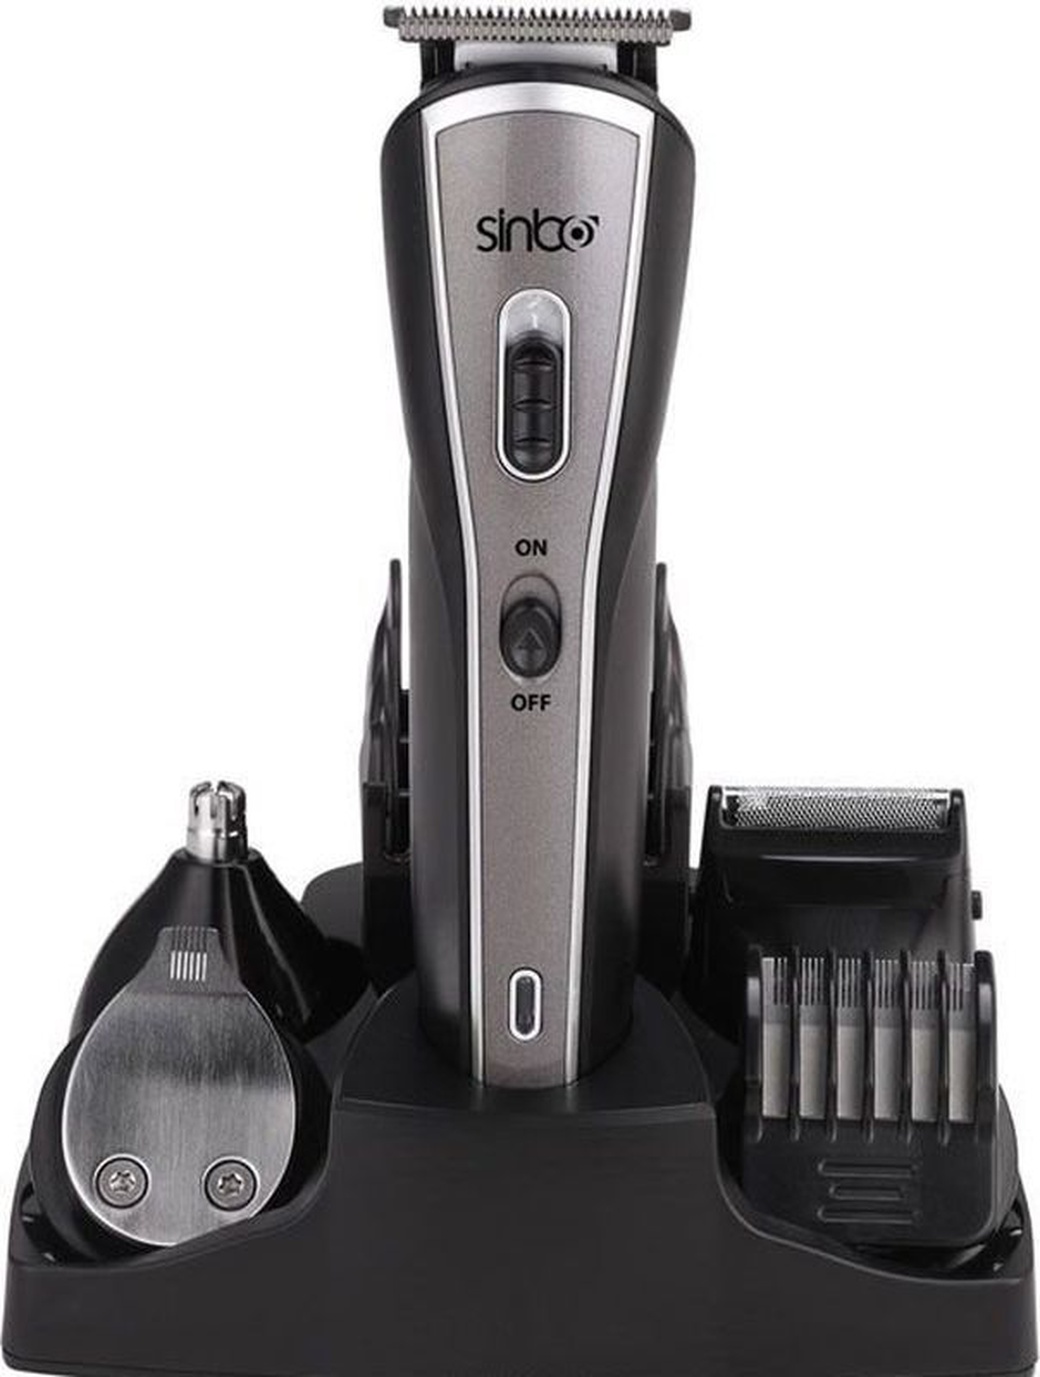 Машинка для стрижки Sinbo SHC 4352 серебристый/черный (насадок в компл:9шт) фото